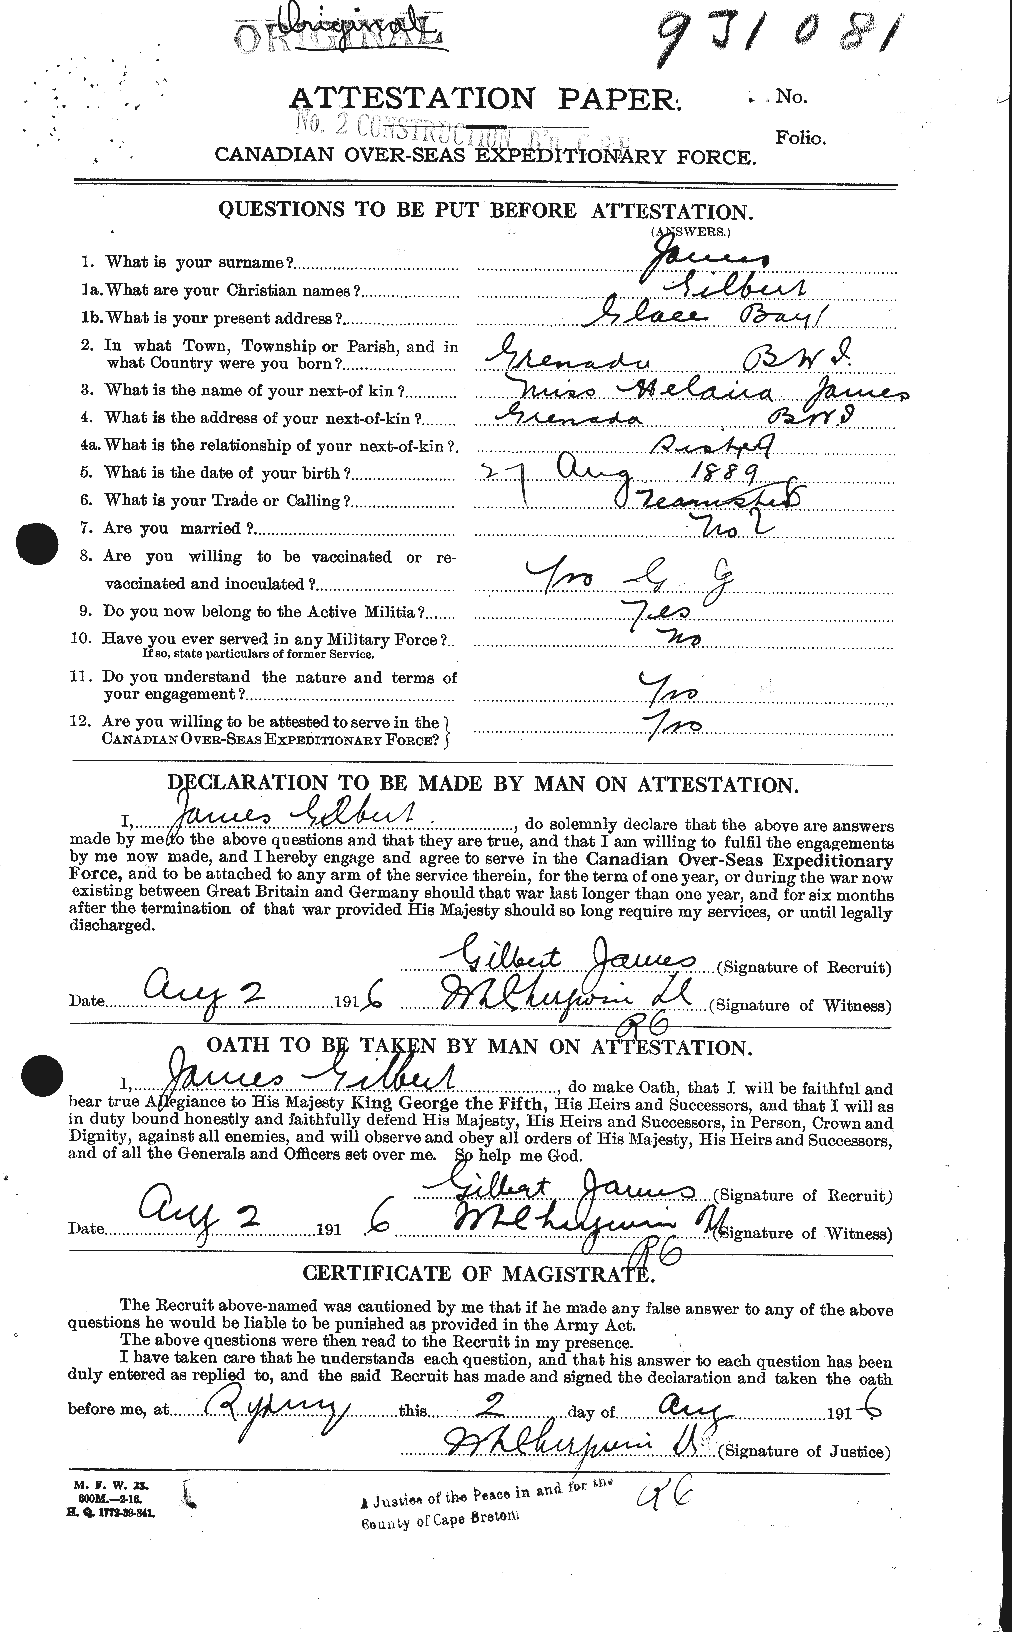 Dossiers du Personnel de la Première Guerre mondiale - CEC 419410a